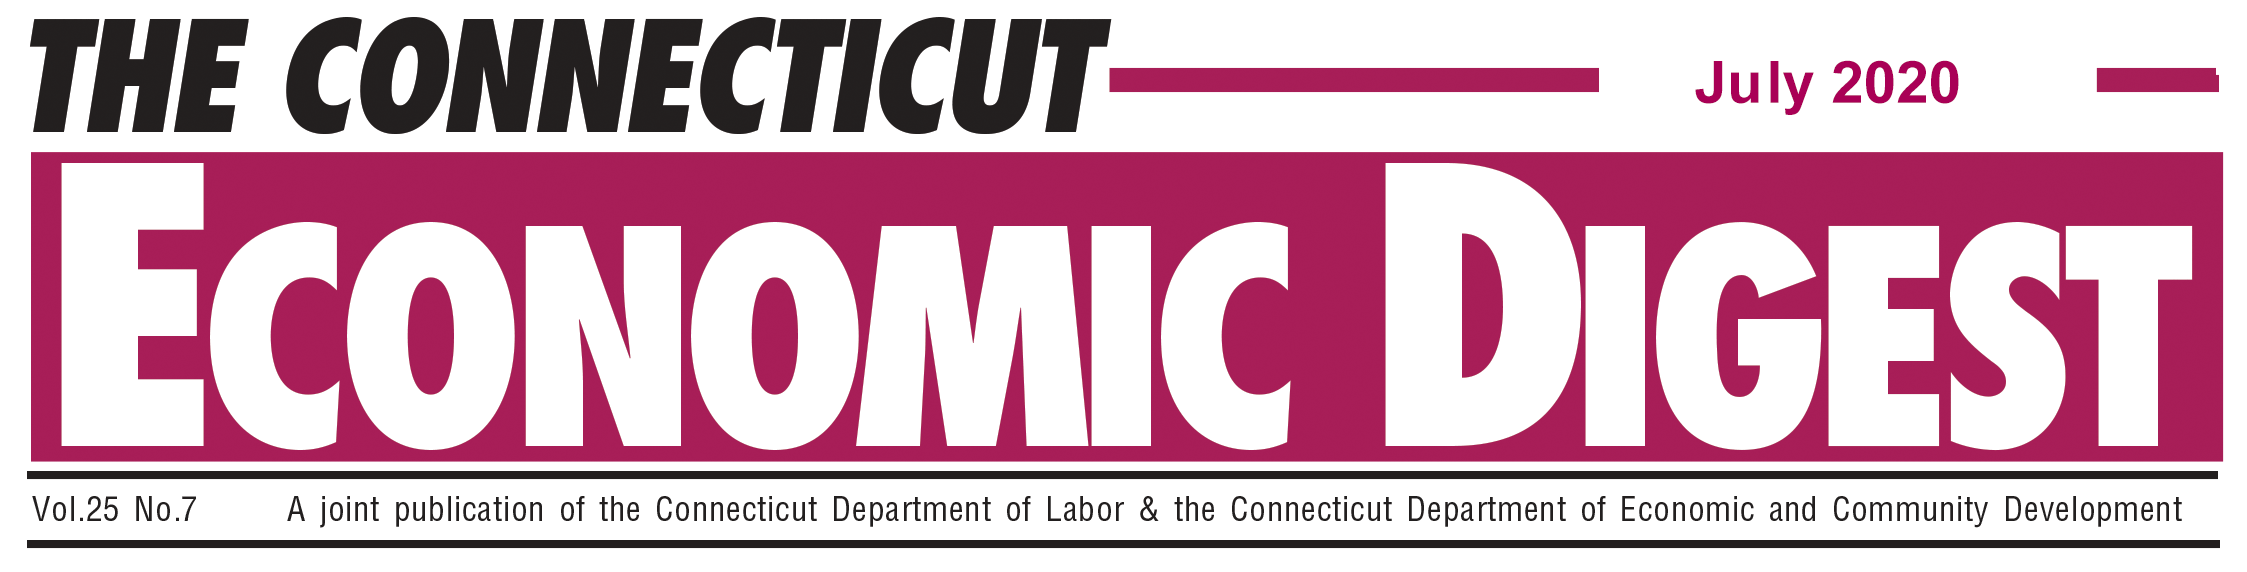 July 2020 Connecticut Economic Digest